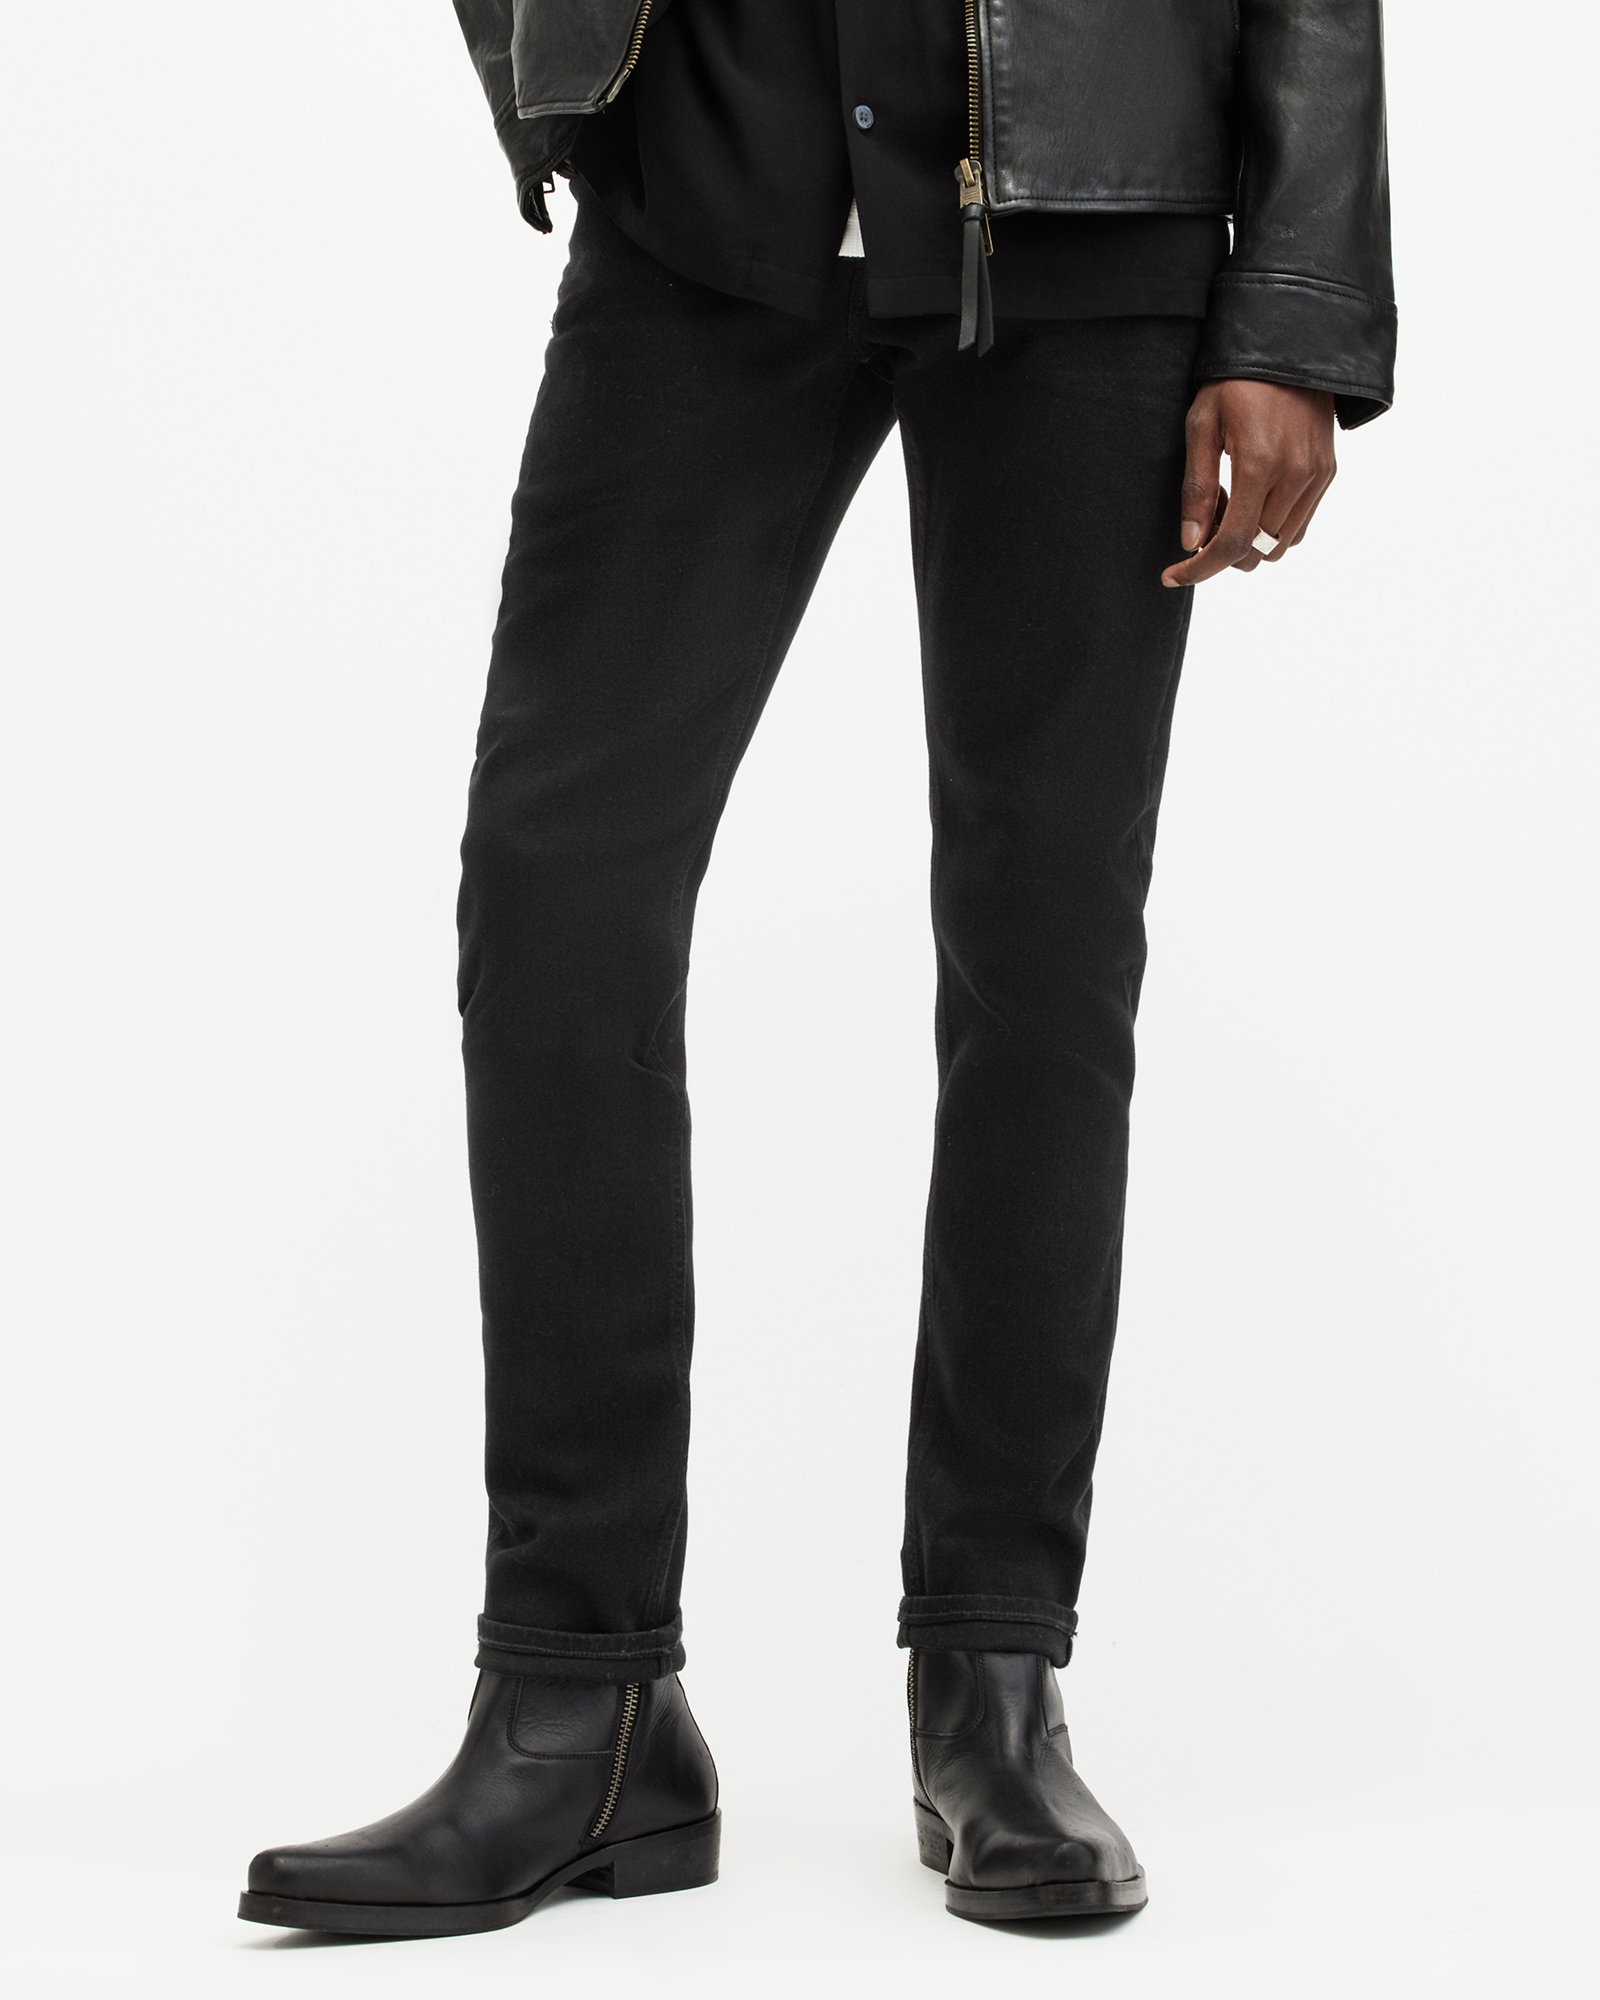 AllSaints Men's Cotton Traditional Rex Slim Jeans, Black, Size: 38/L30